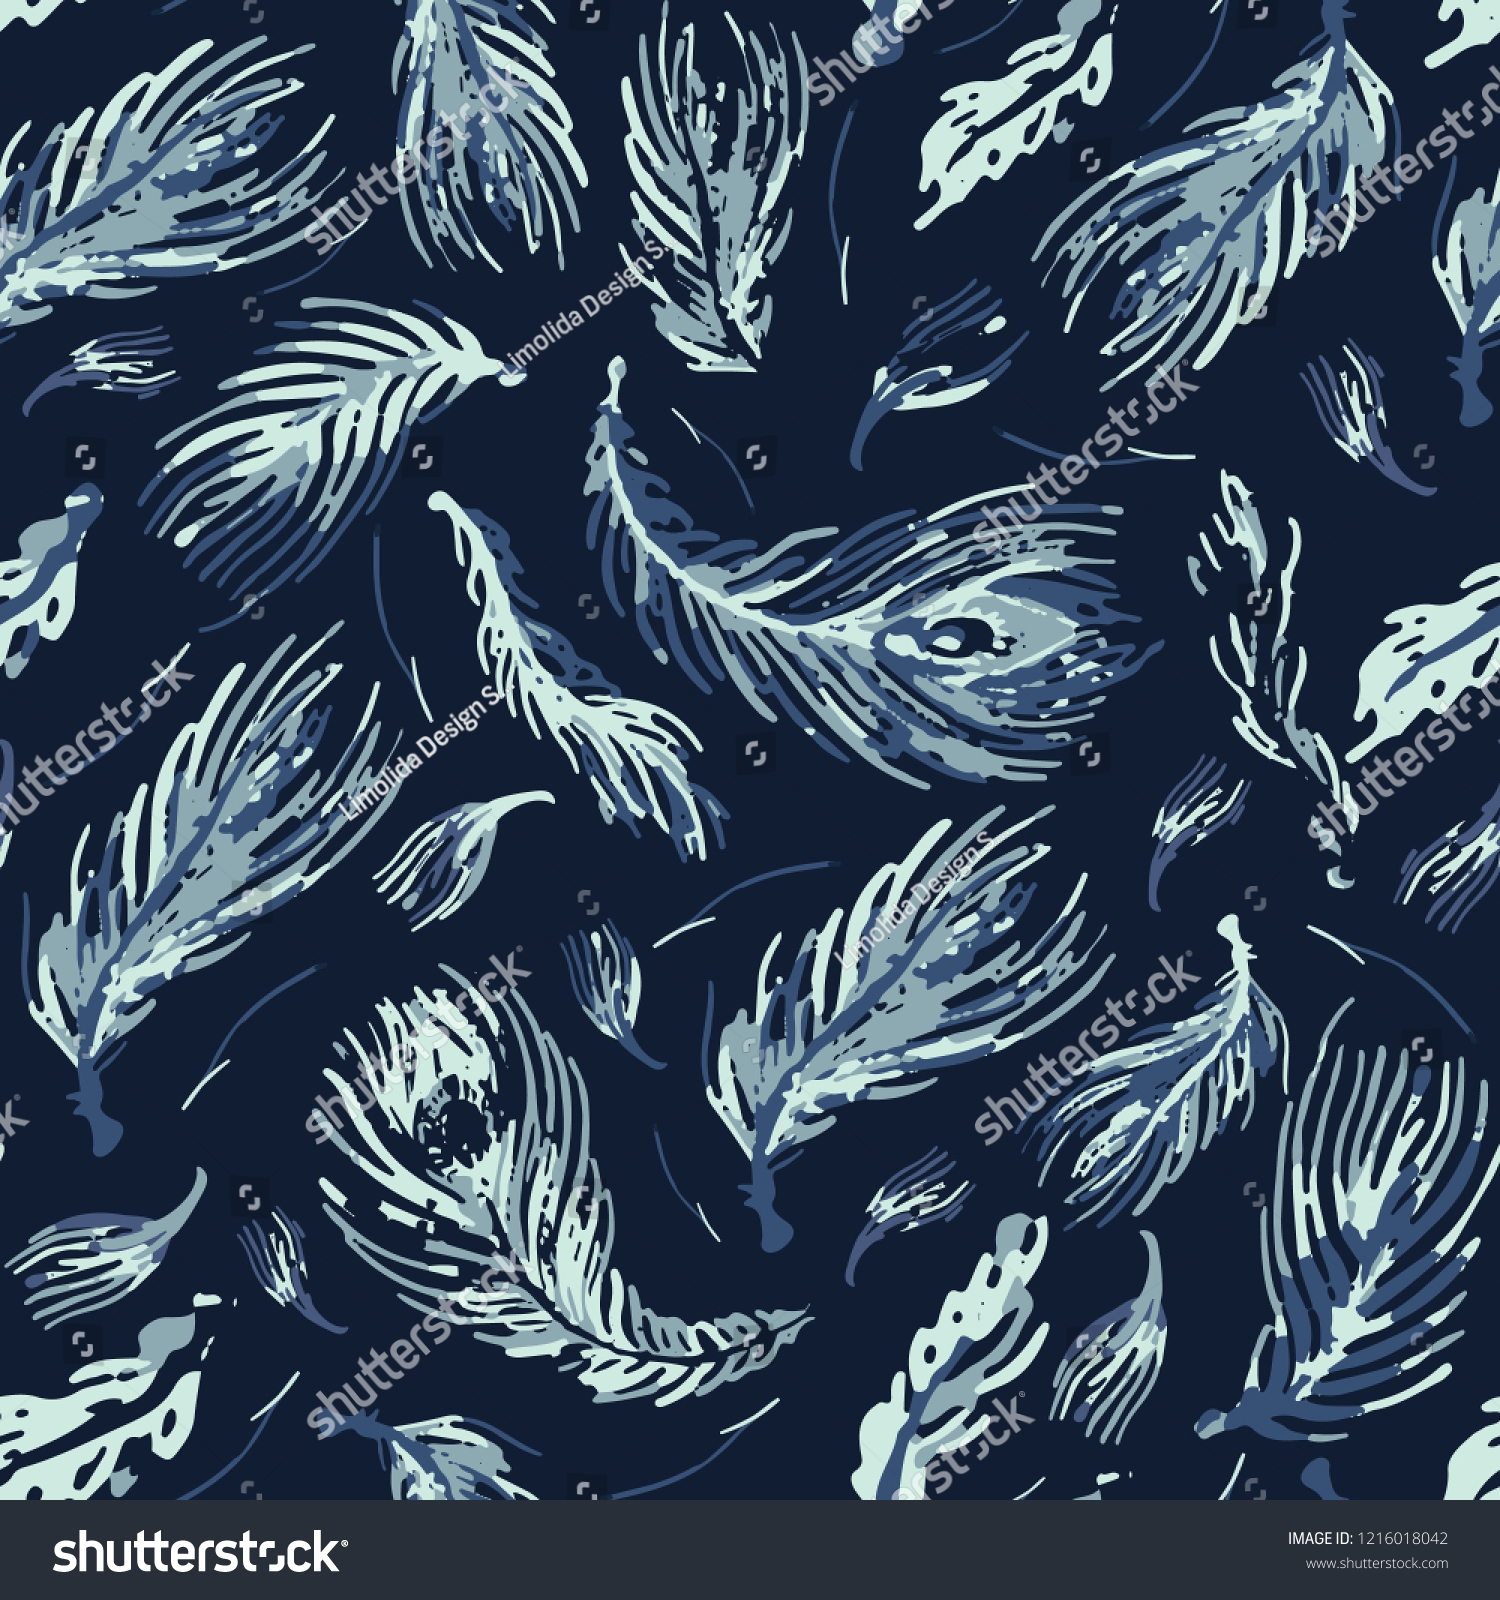 柔らかい孔雀の羽日本のシームレスなベクター画像パターン 染料絵の手描きの藍色の羽のようなテクスチャー クラシック日本デコール アジア風背景 エレガントな包装用ギフトラップ のベクター画像素材 ロイヤリティフリー